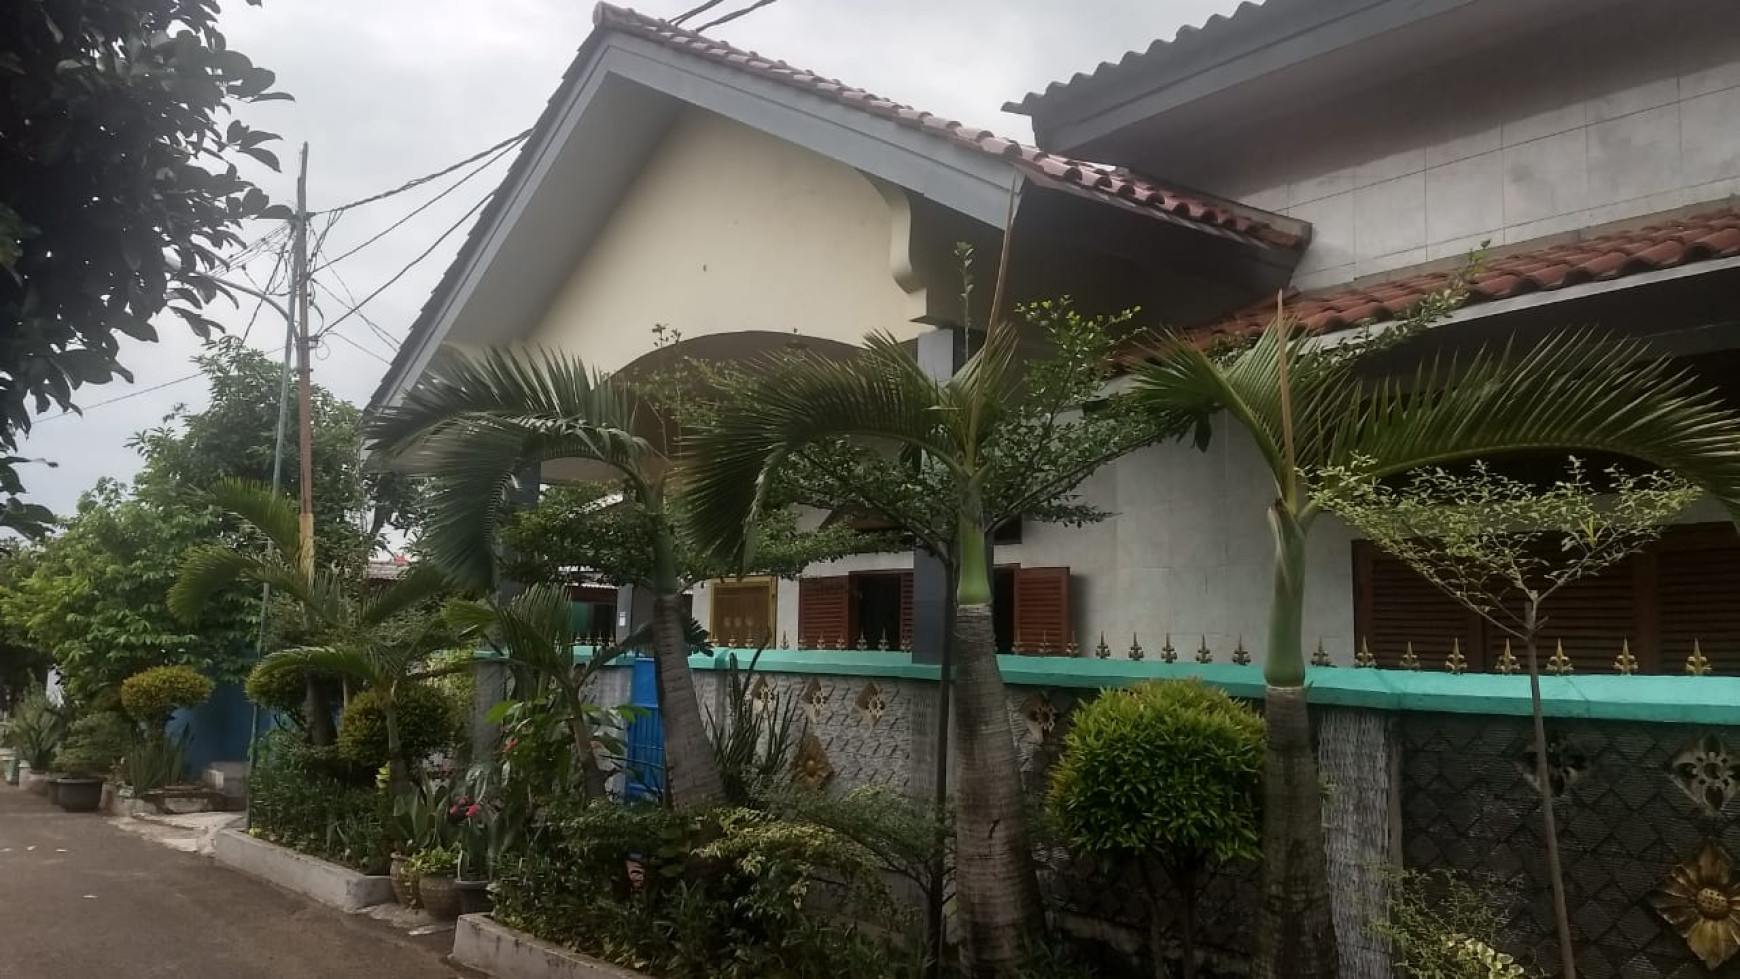 Dijual rumah di kavling Pemda 4 Karawaci Tangerang